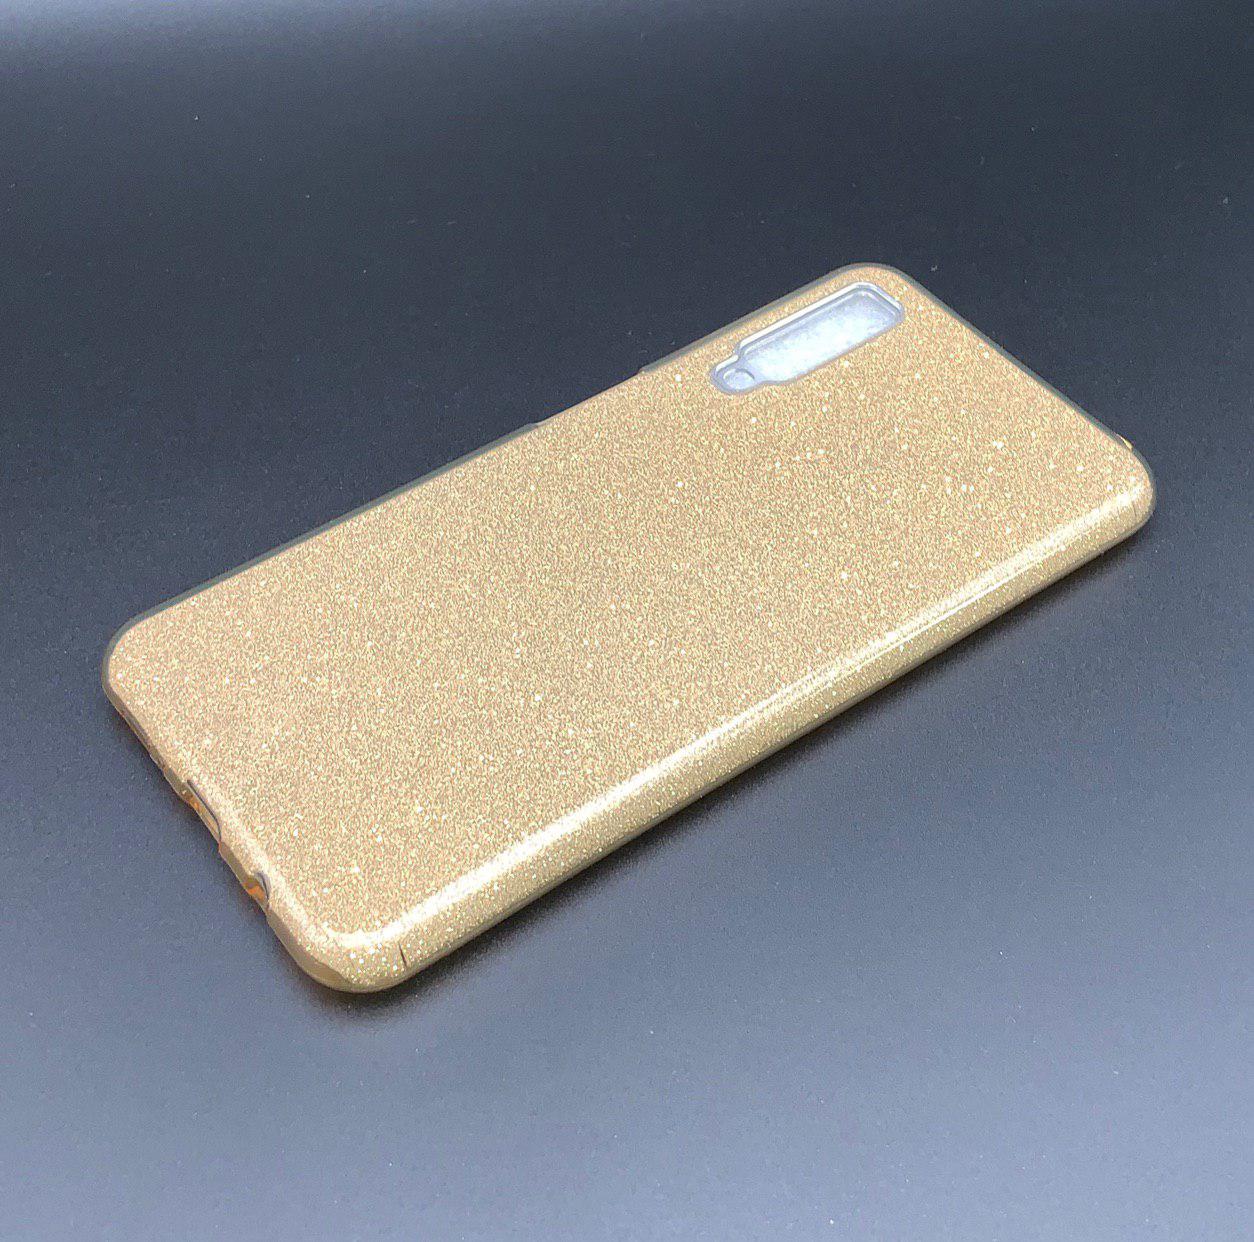 Чехол накладка Shine для SAMSUNG Galaxy A7 2018 (SM-A750), силикон, блестки, цвет золотистый.